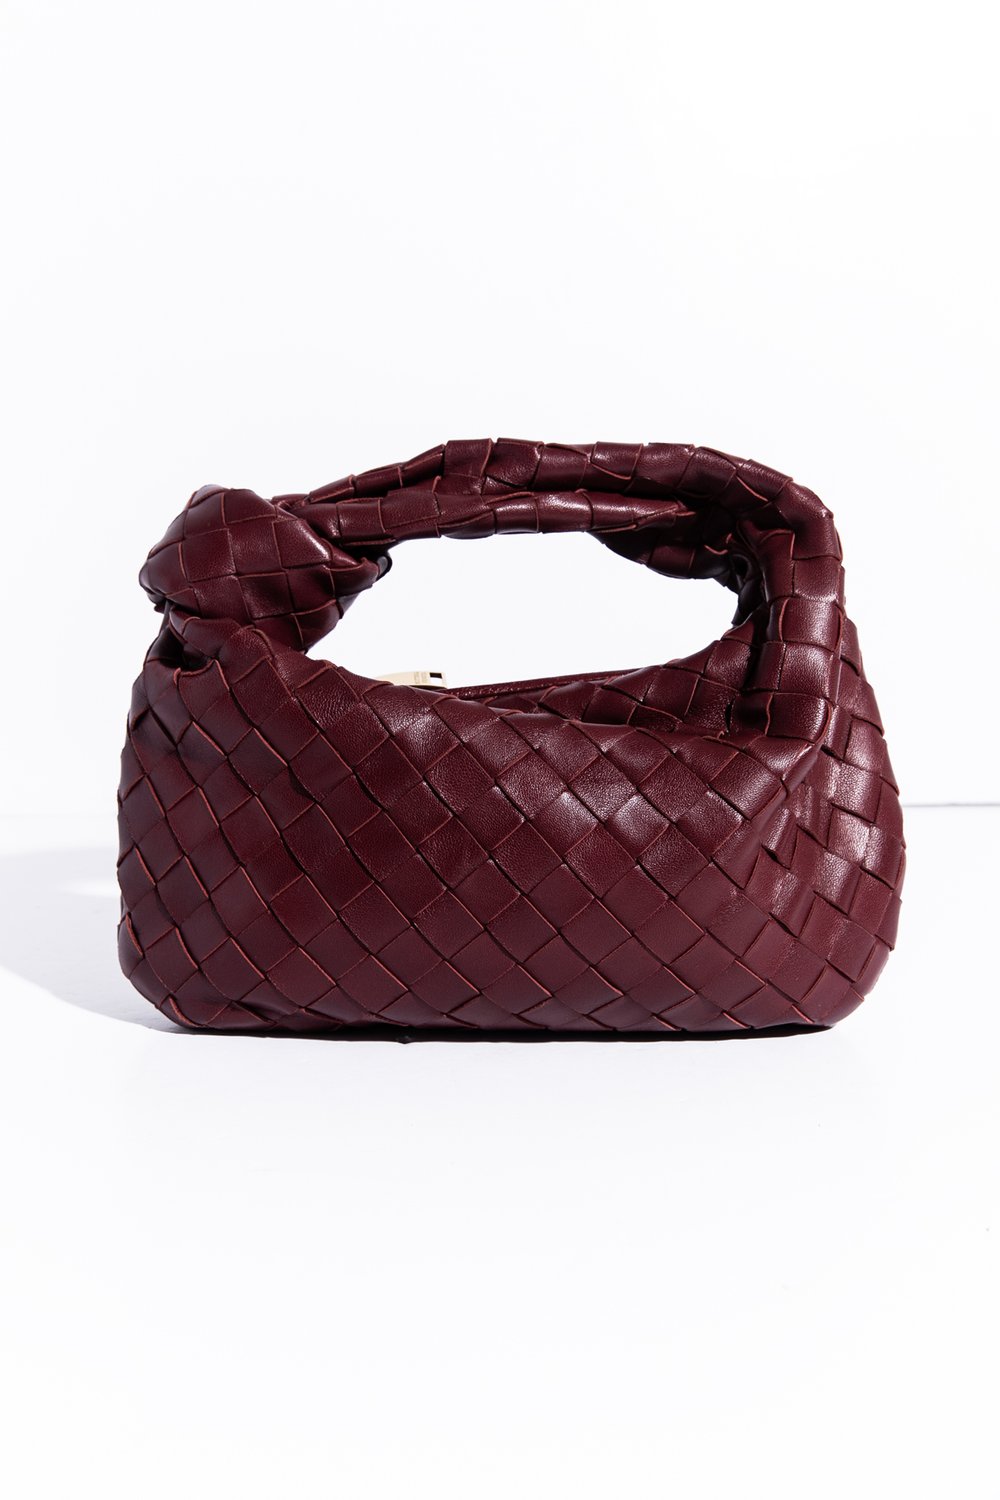 Bottega Veneta Woman's Mini Bag